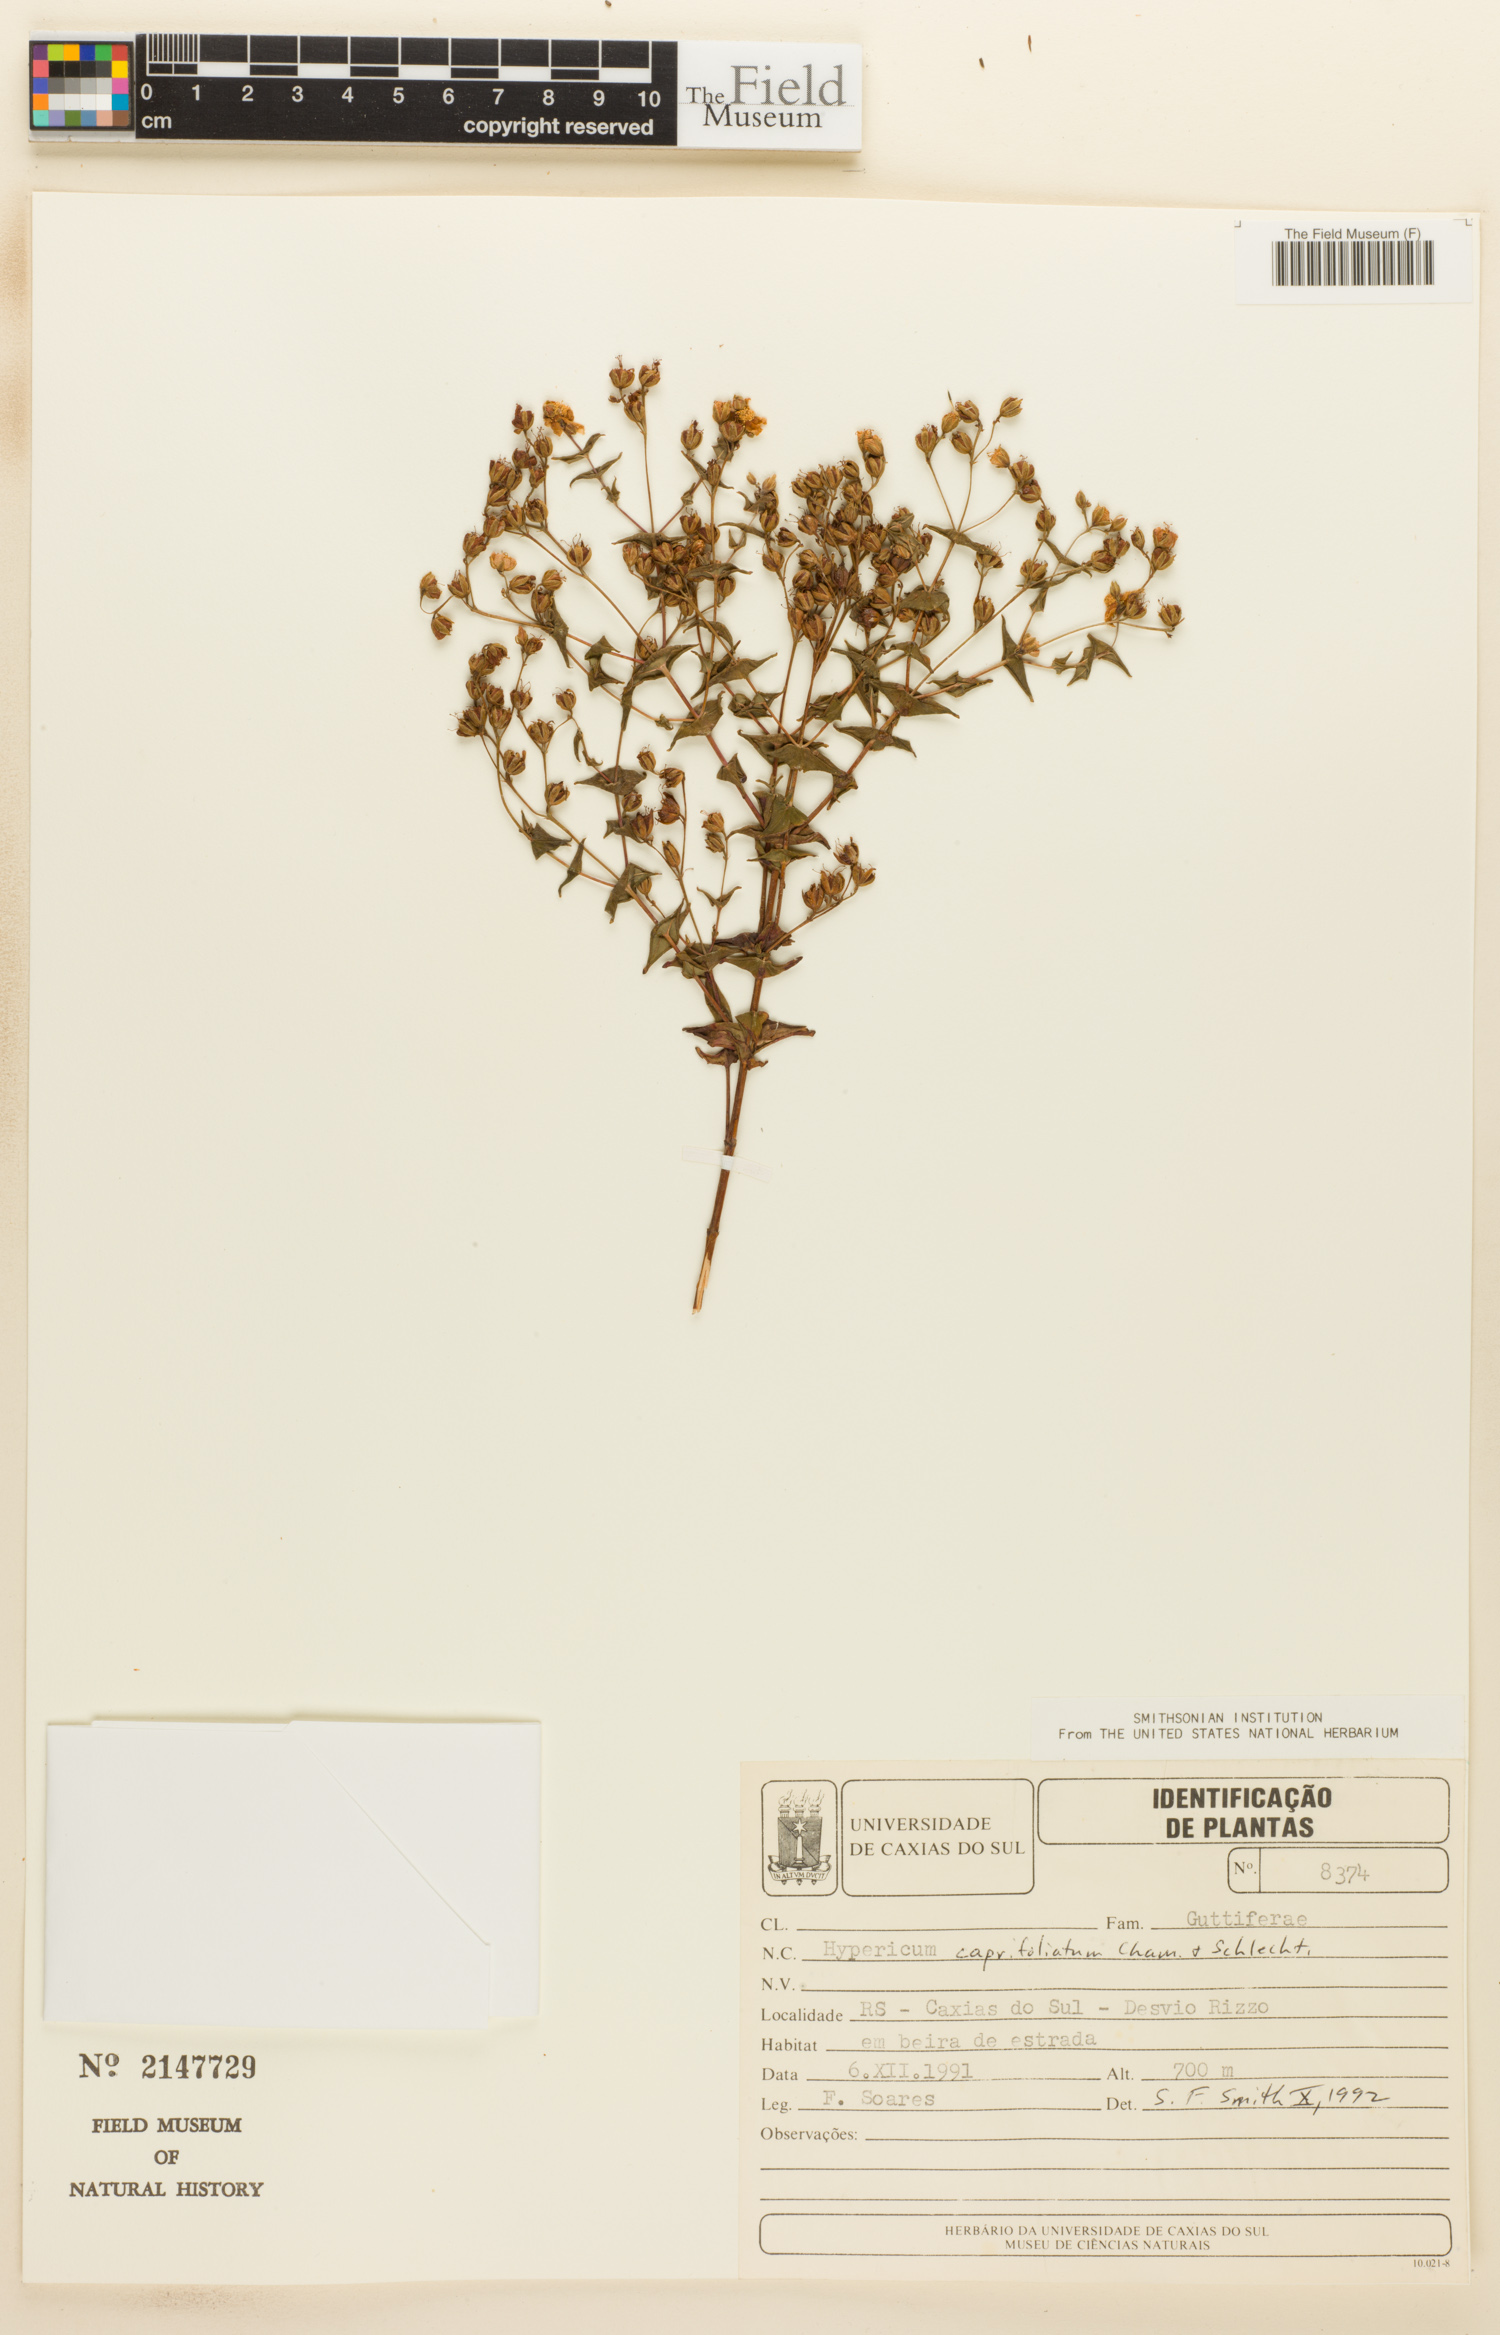 Hypericum caprifoliatum image